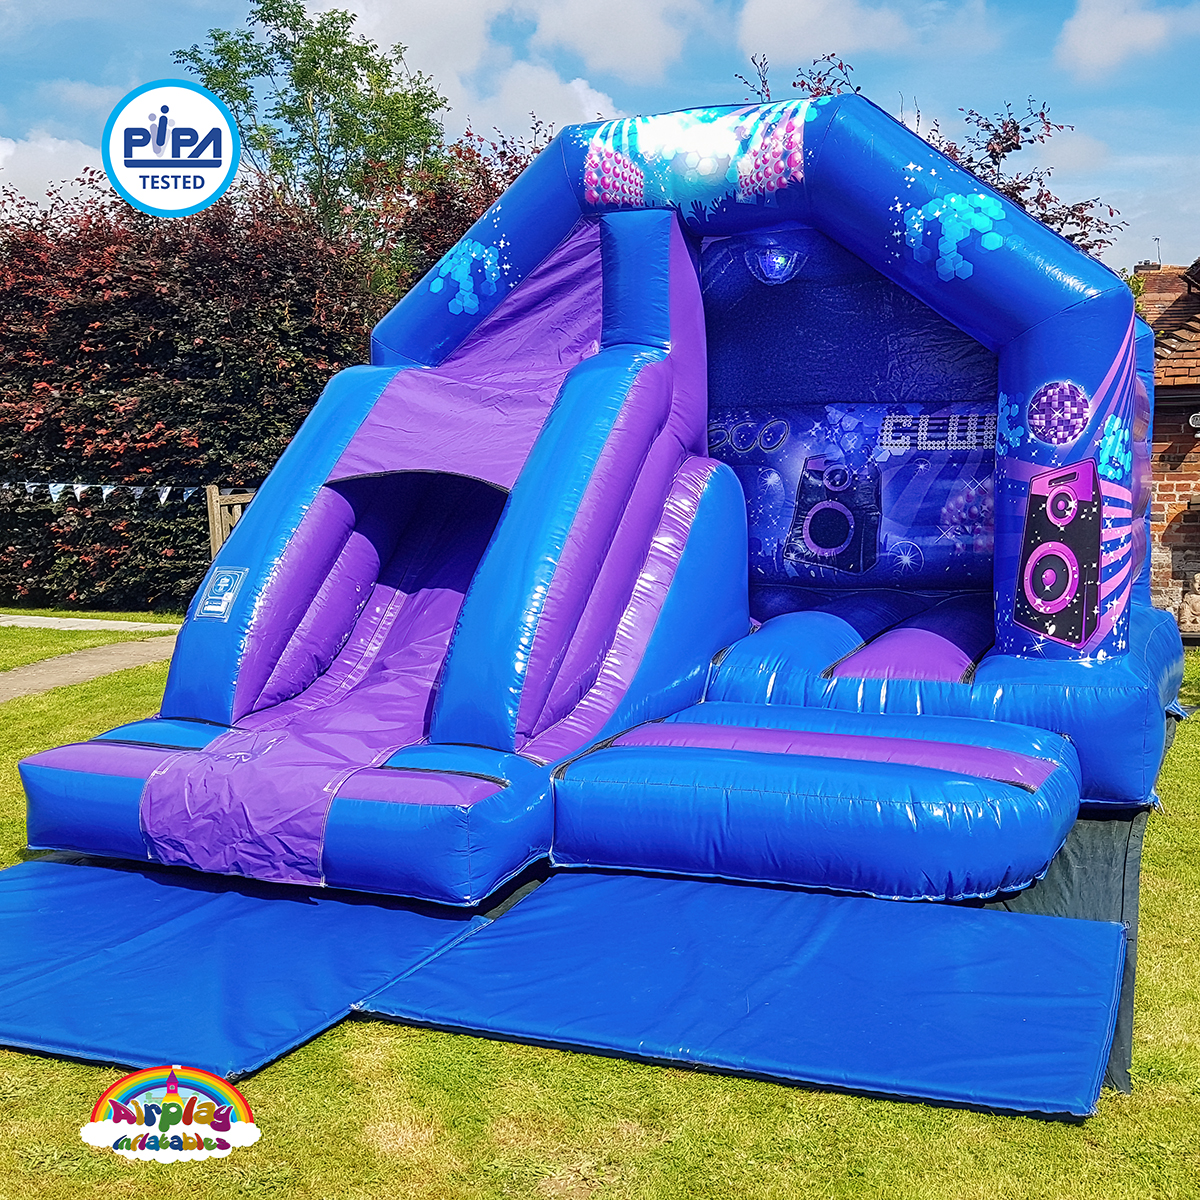 Disco bouncy castle hire